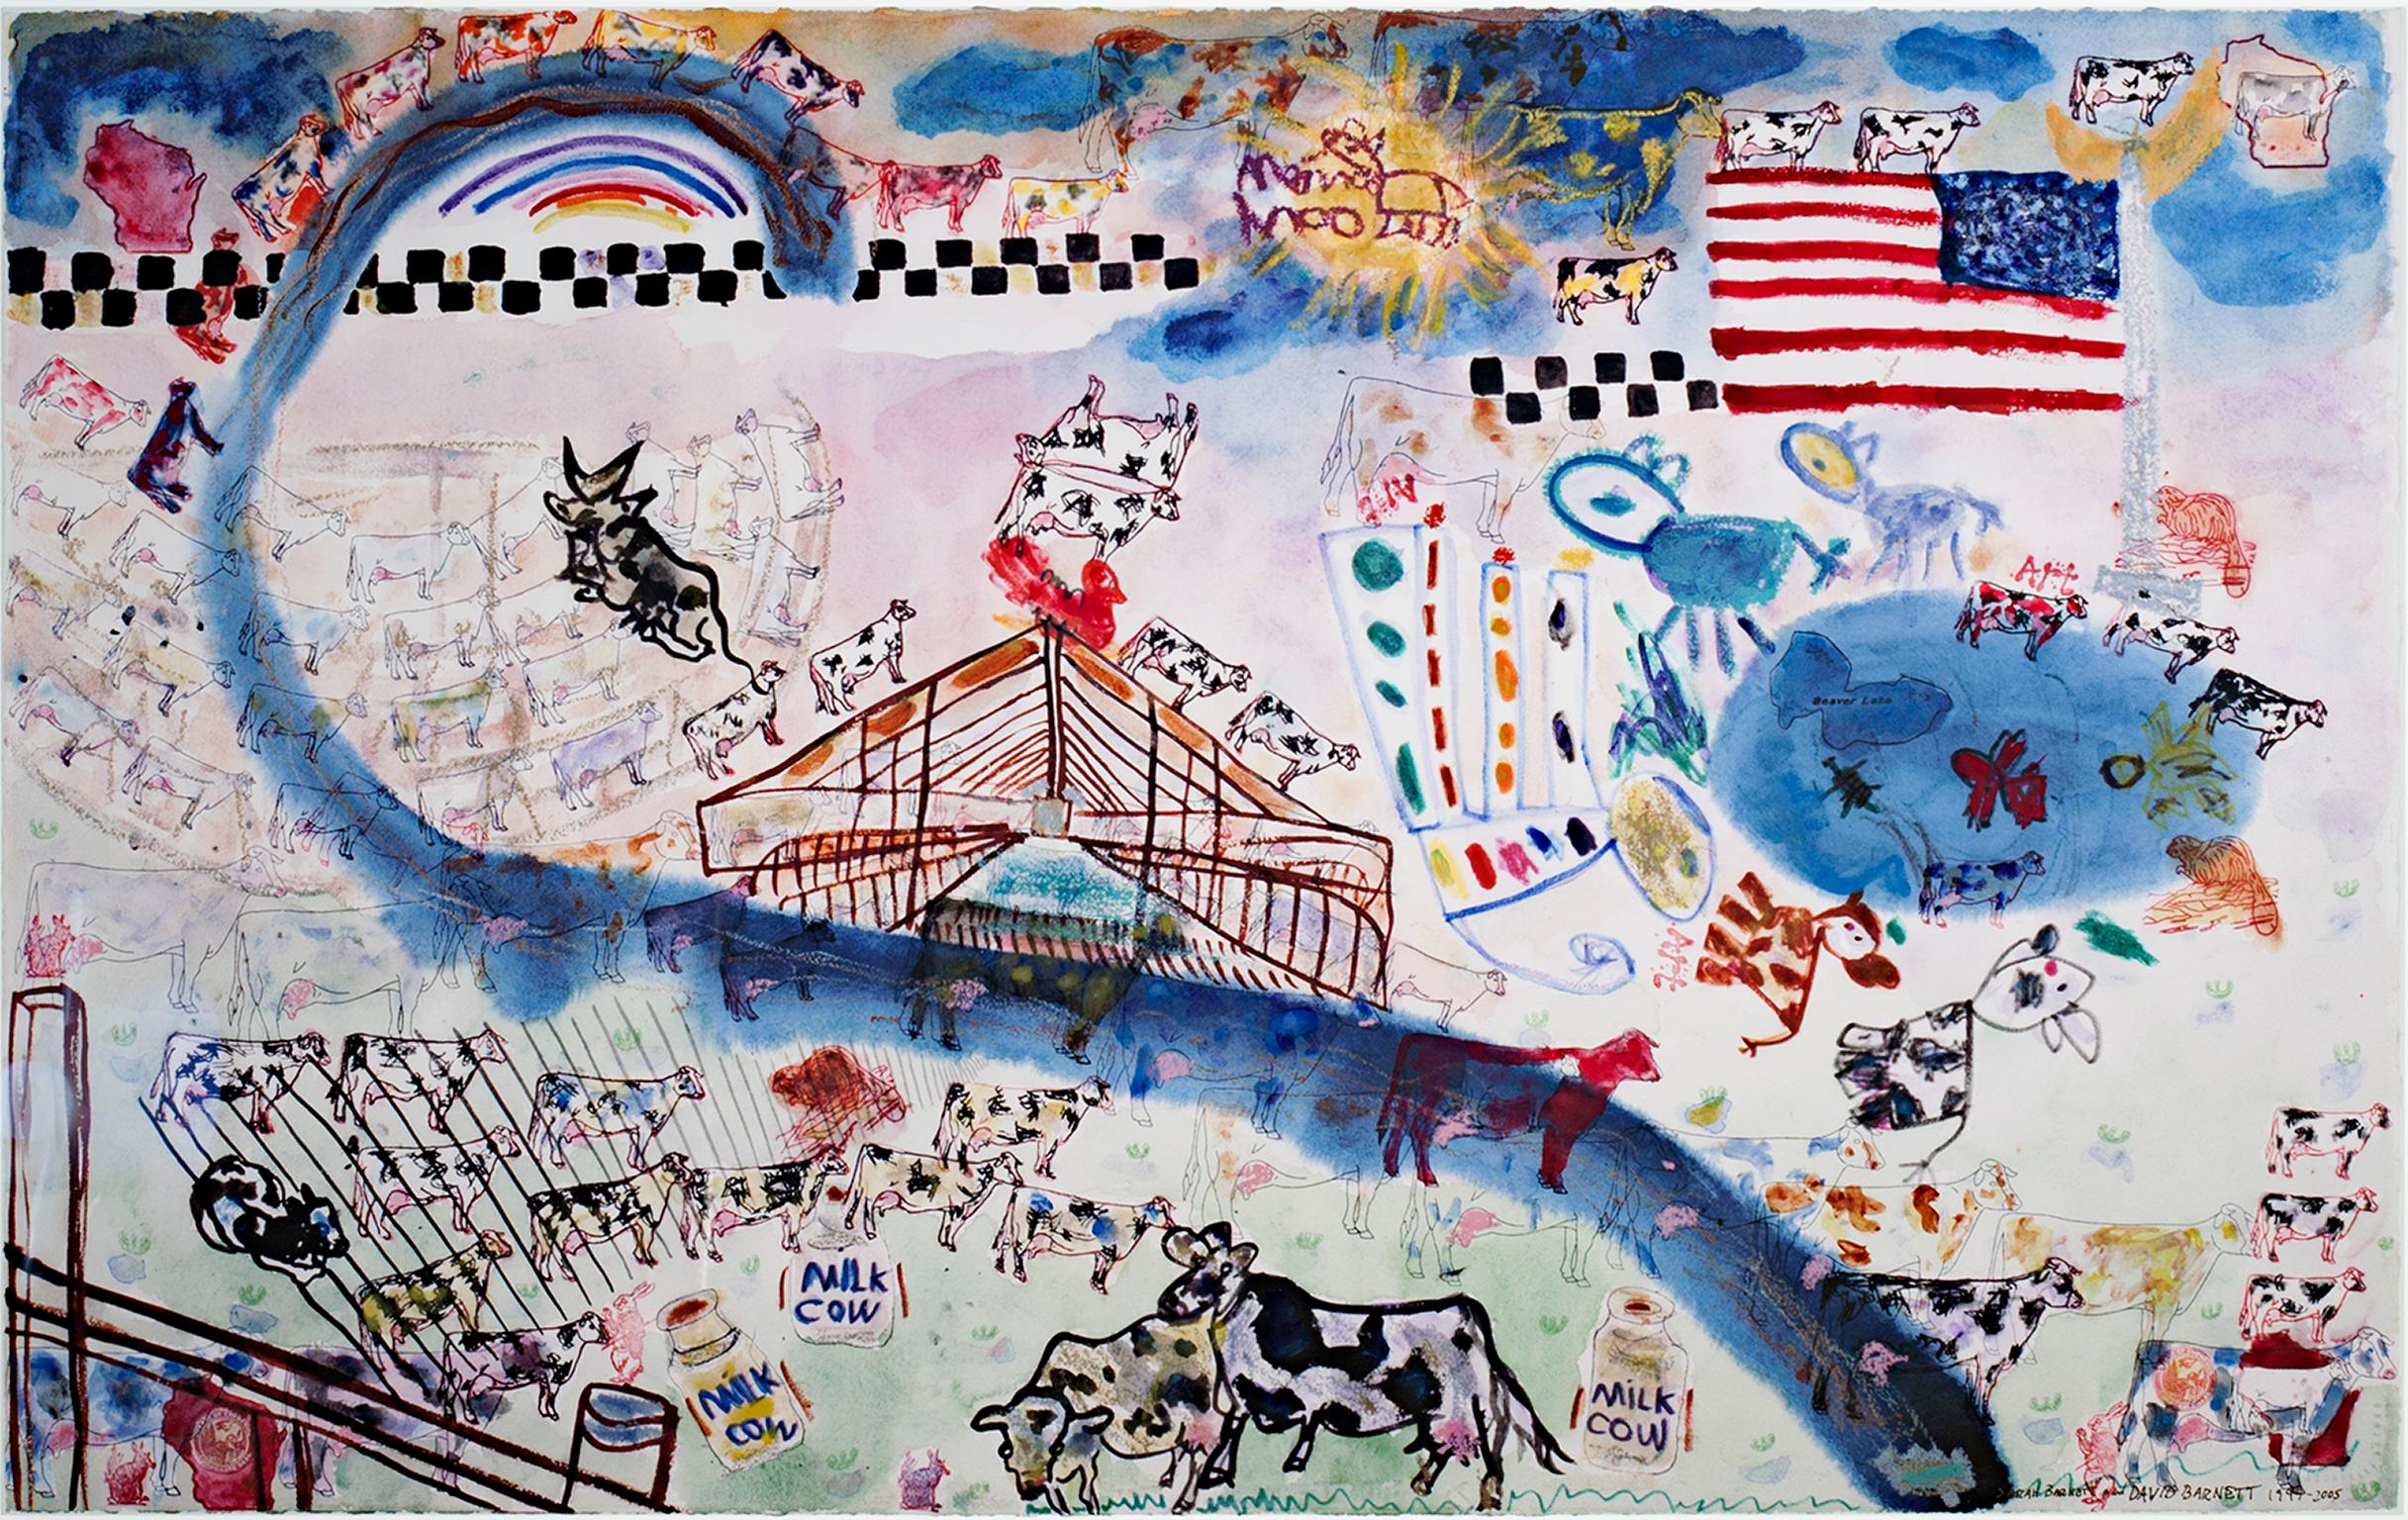 "Gehl Dairy Farm" ist eine Originalarbeit in Mischtechnik von David Barnett und seiner Tochter Sarah Barnett, signiert und datiert unten rechts. Dieses 1997 begonnene und 2005 vollendete Werk ist eine surreale Darstellung eines Milchviehbetriebs,